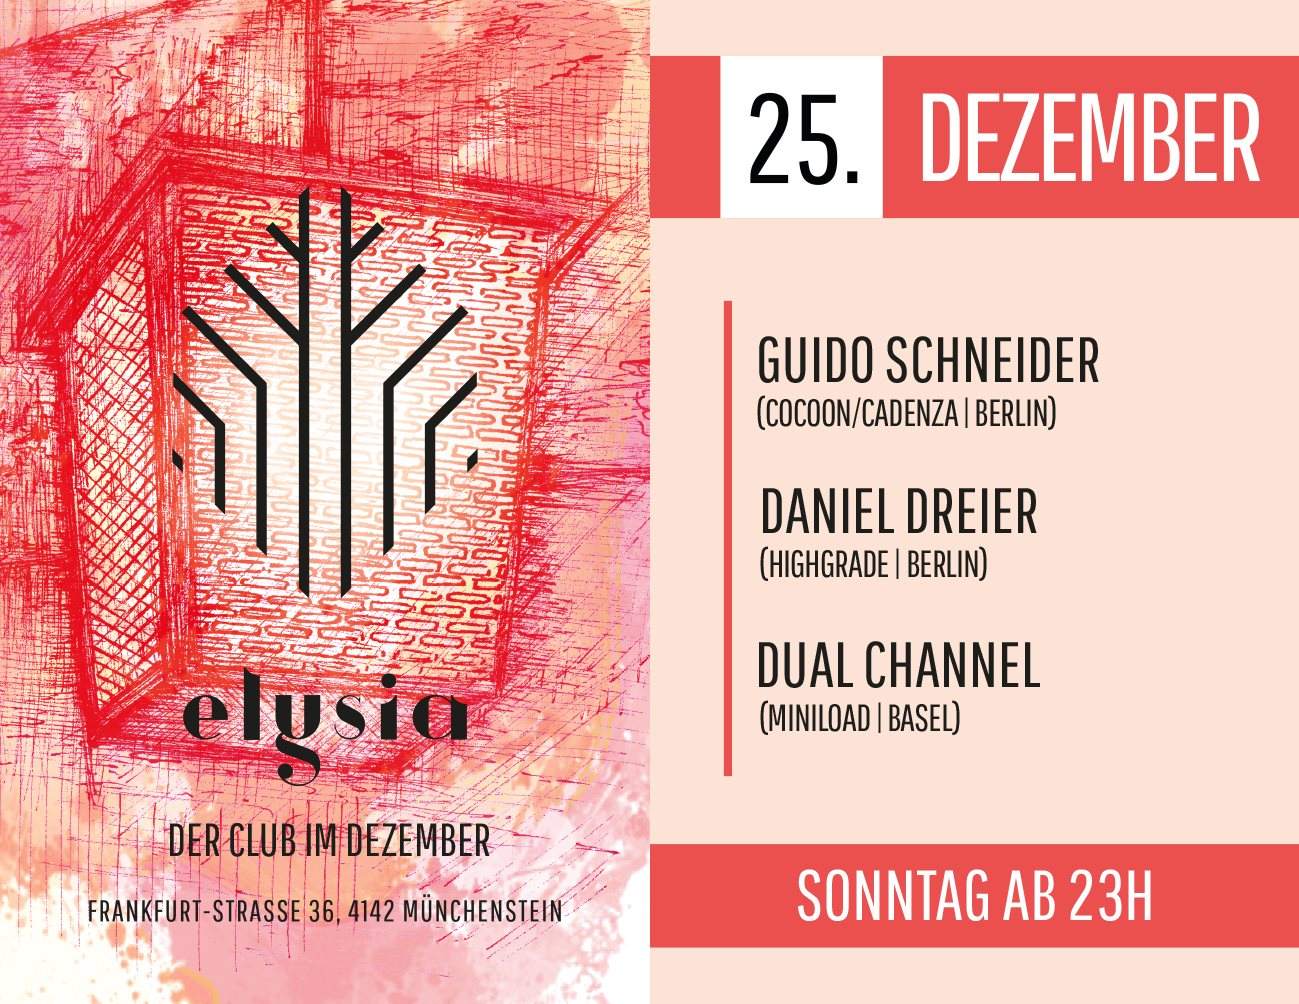 Guido Schneider, Daniel Dreier, Dual Channel - Página frontal